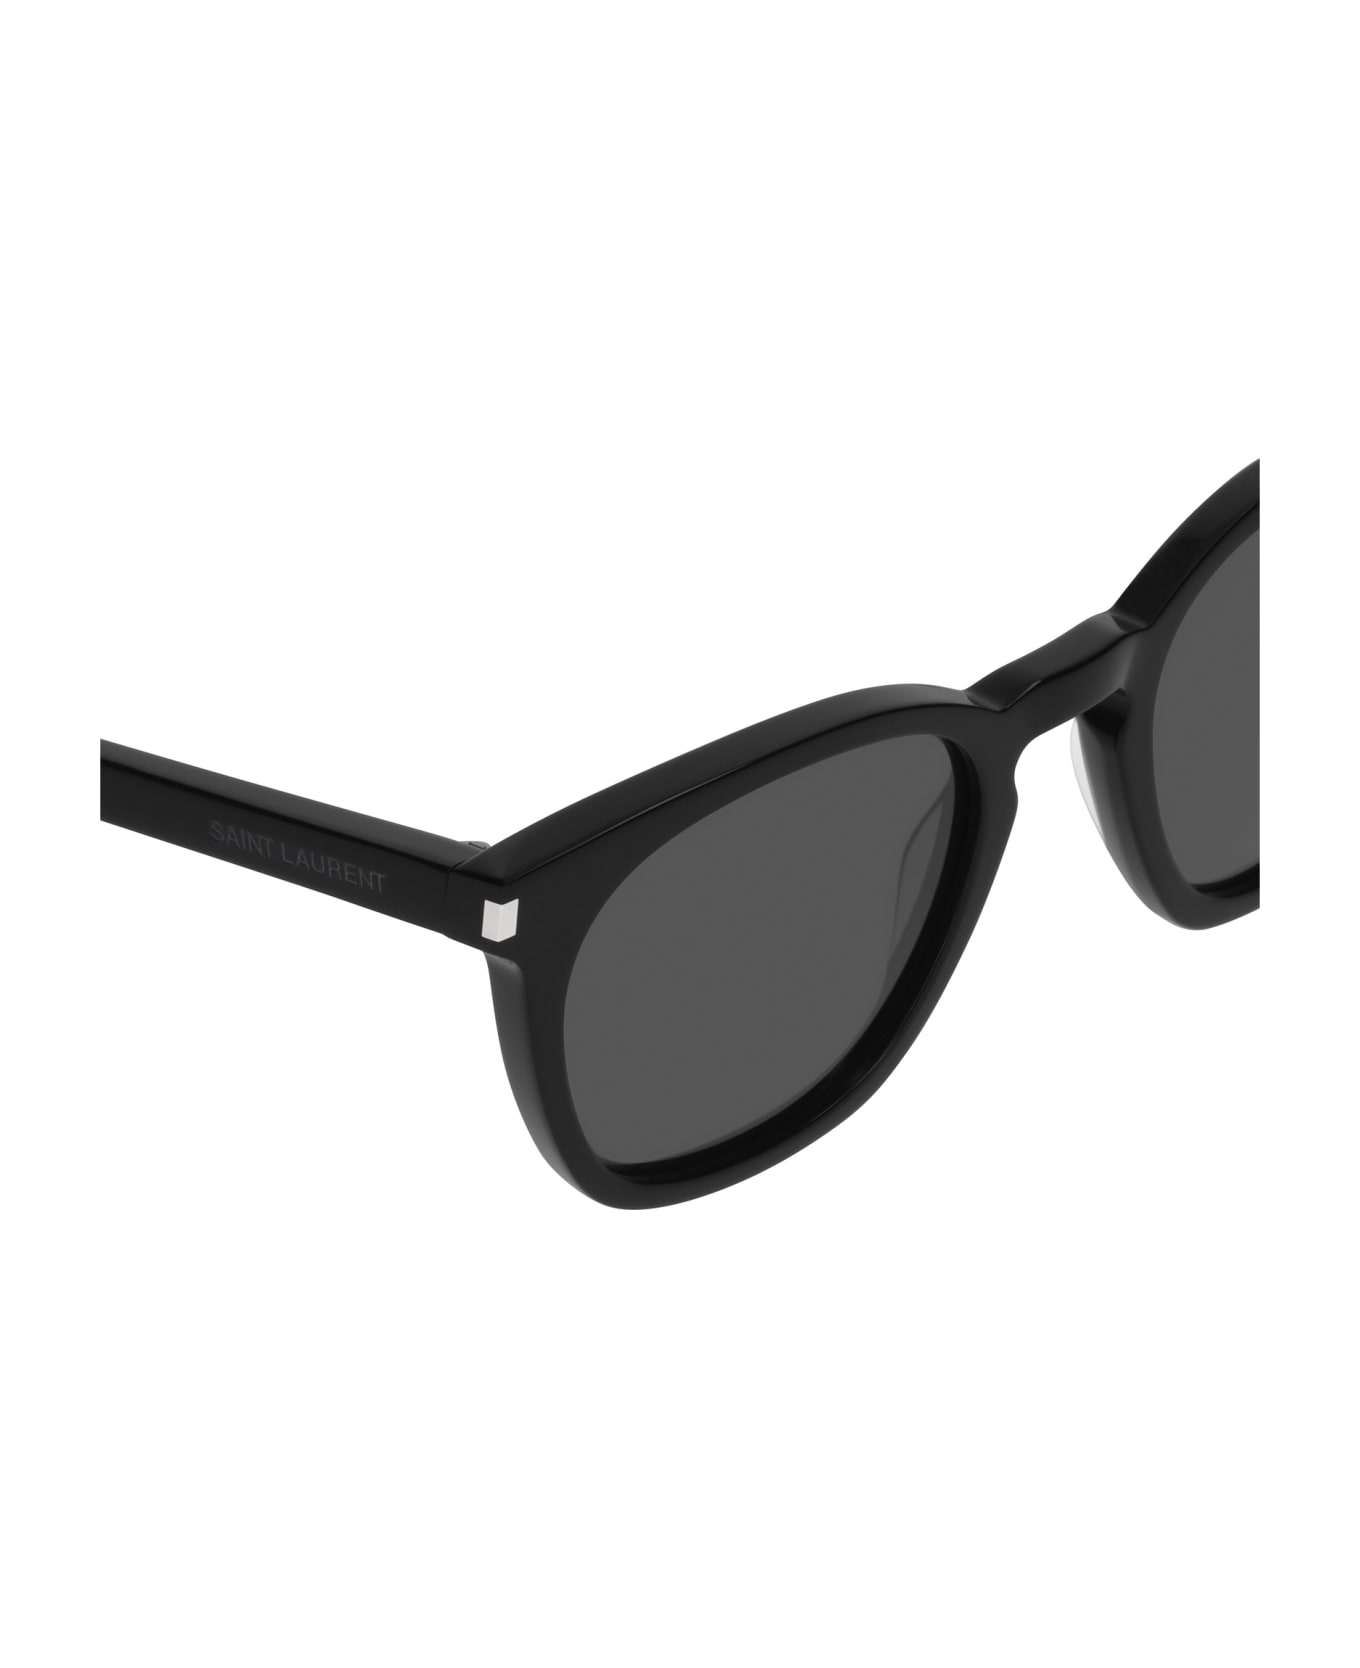 Saint Laurent Eyewear Sl 28 Black Sunglasses - Black